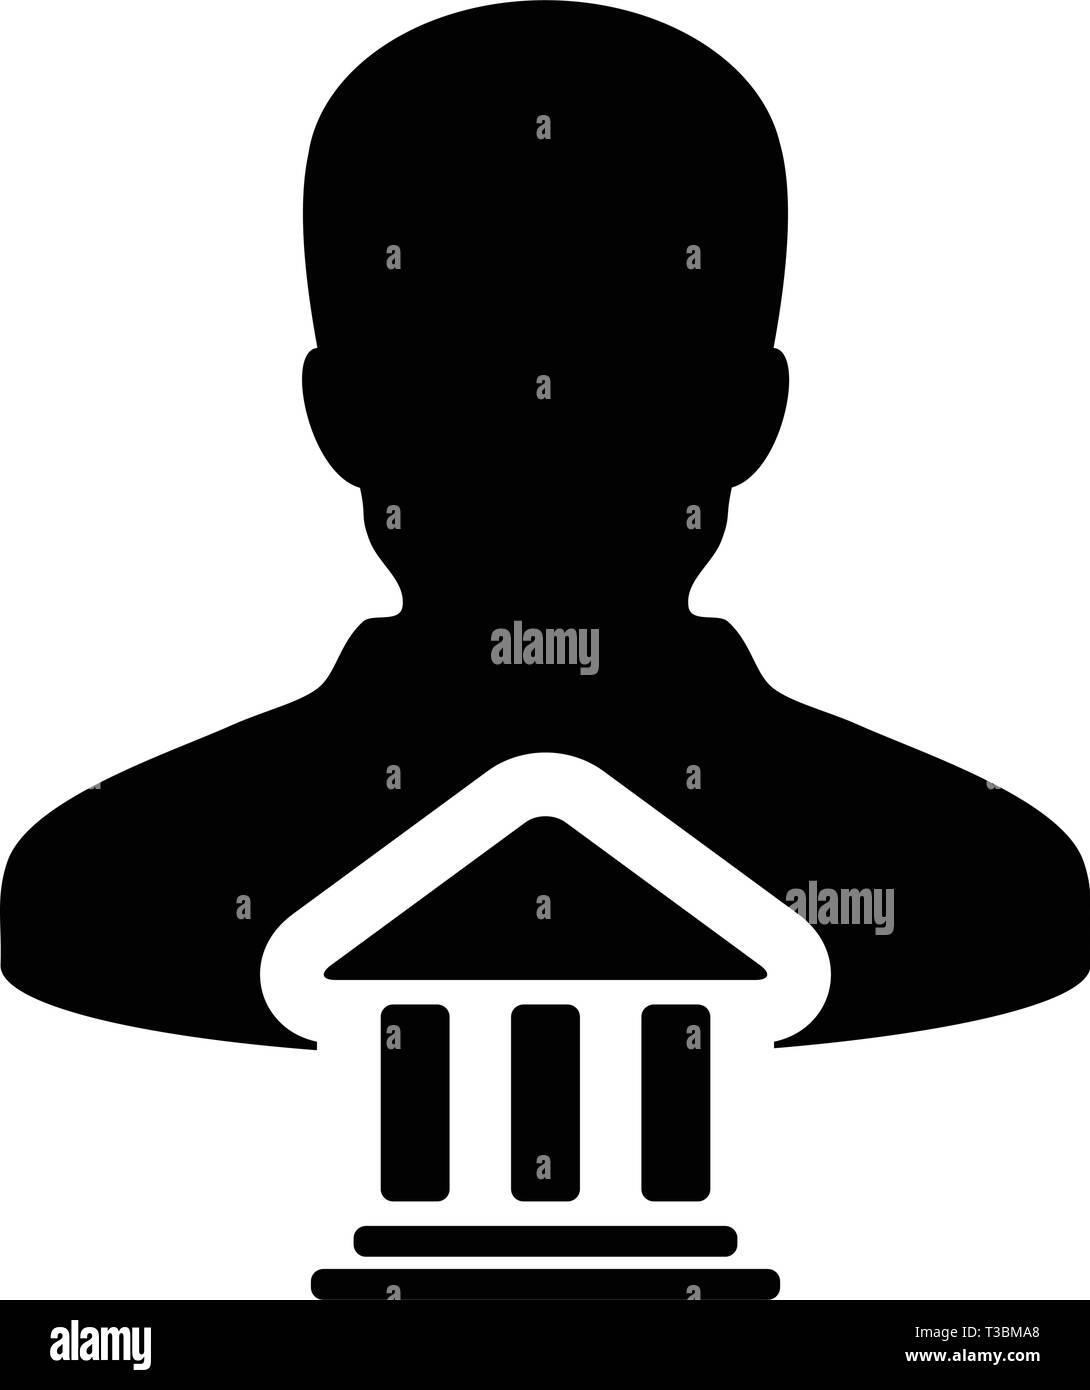 Darlehen Symbol Vektor mit männliche Person Profil Avatar mit Gebäude Symbol für Banking und Finance in Glyph Piktogramm Abbildung Stock Vektor